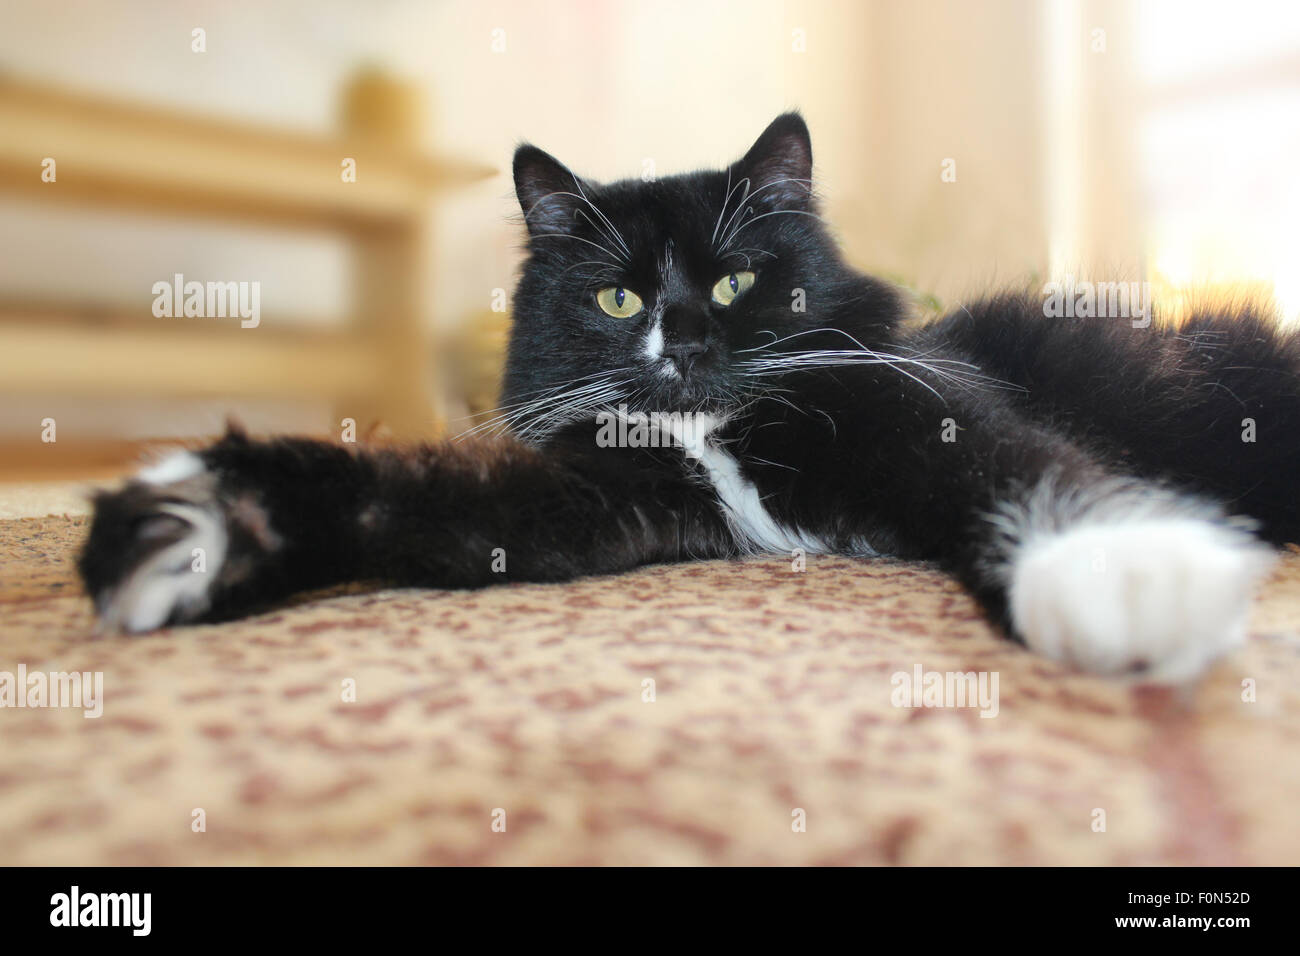 Chat noir avec bords blancs de paws gisant sur le sol Banque D'Images